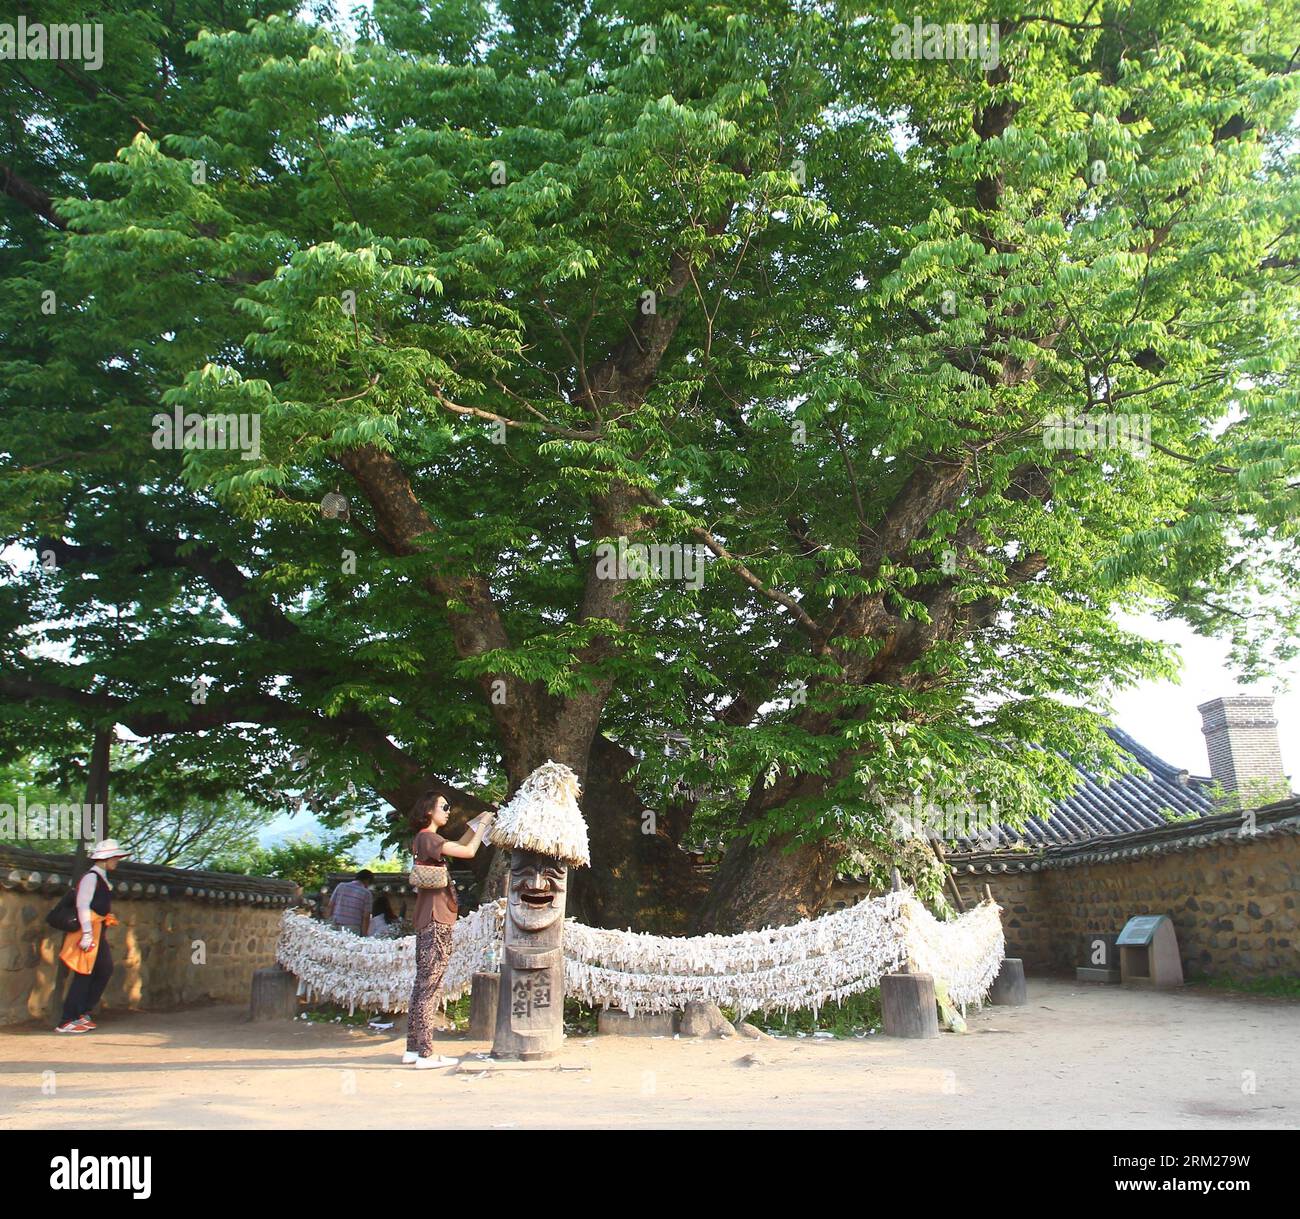 (130529) -- ANDONG, 29 maggio 2013 (Xinhua) -- Un turista esprime un desiderio sotto un albero di oltre 600 anni nel villaggio di Hahoe, Andong, Corea del Sud, il 25 maggio 2013. Hahoe Village è un villaggio tradizionale della dinastia Joseon. Il villaggio è una parte preziosa della cultura coreana perché conserva l'architettura in stile Joseon e le tradizioni popolari. Il villaggio di Hahoe, insieme al villaggio di Yangdong a Gyeongju, è stato aggiunto alla lista dei patrimoni dell'umanità dell'UNESCO il 31 luglio 2010. (Xinhua/Yao Qilin) COREA DEL SUD-ANDONG-WORLD HERITAGE PUBLICATIONxNOTxINxCHN Foto Stock